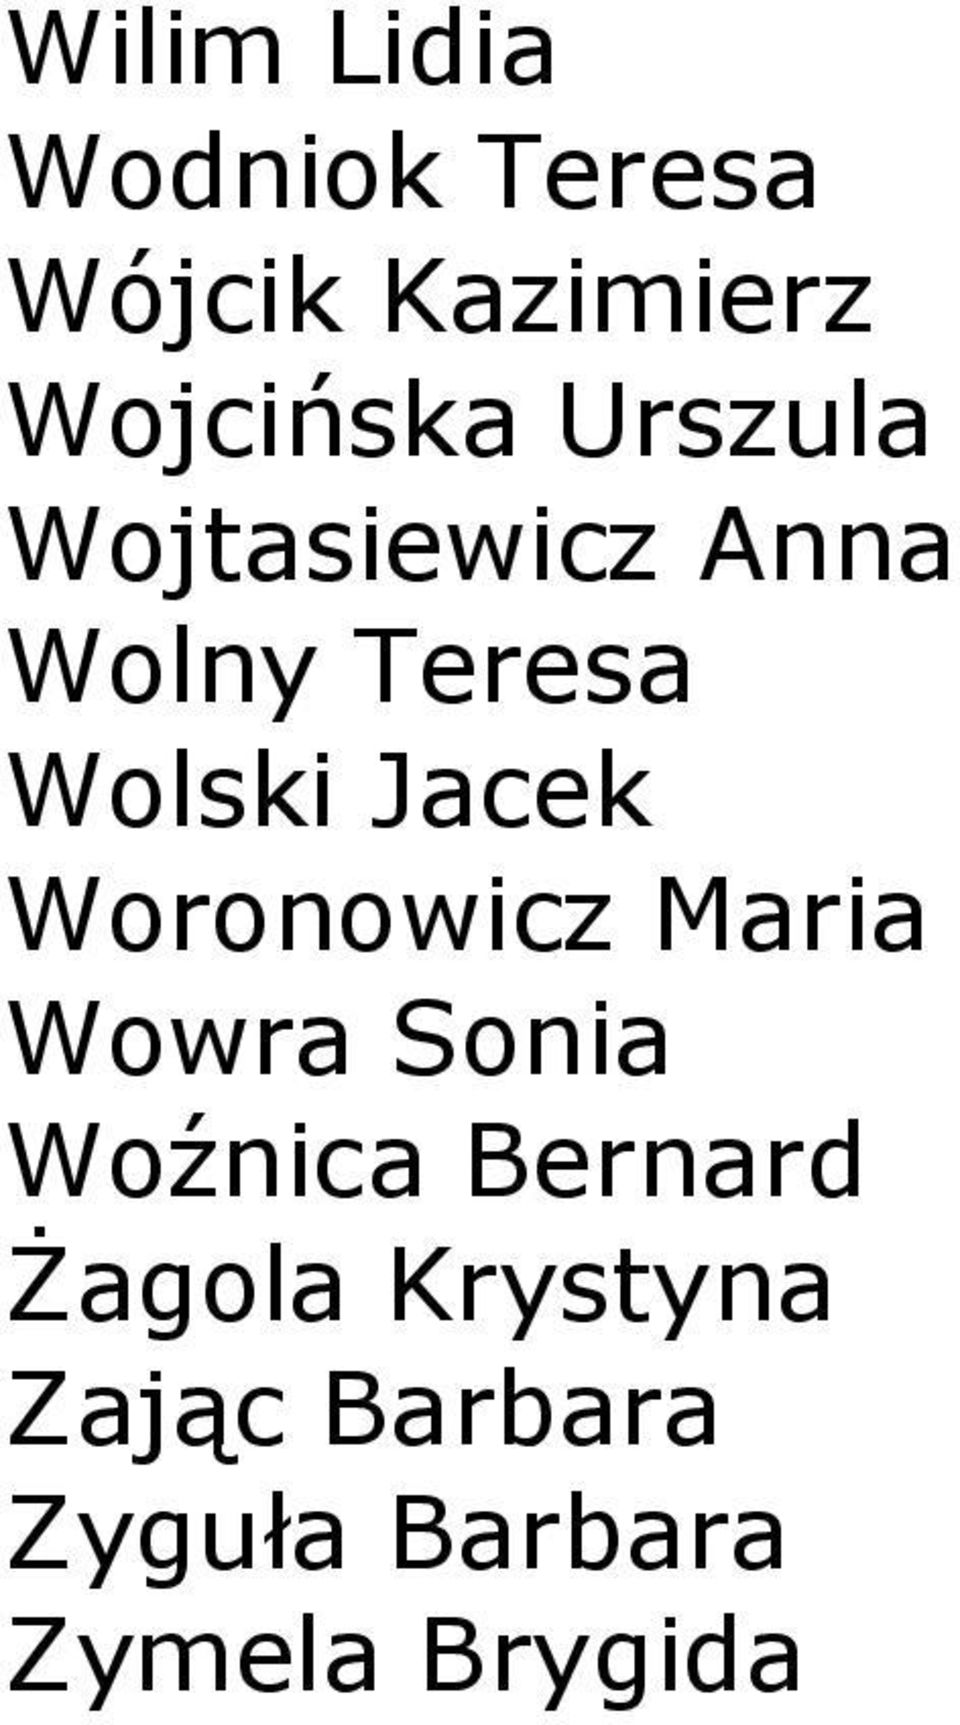 Wolski Jacek Woronowicz Maria Wowra Sonia Woźnica